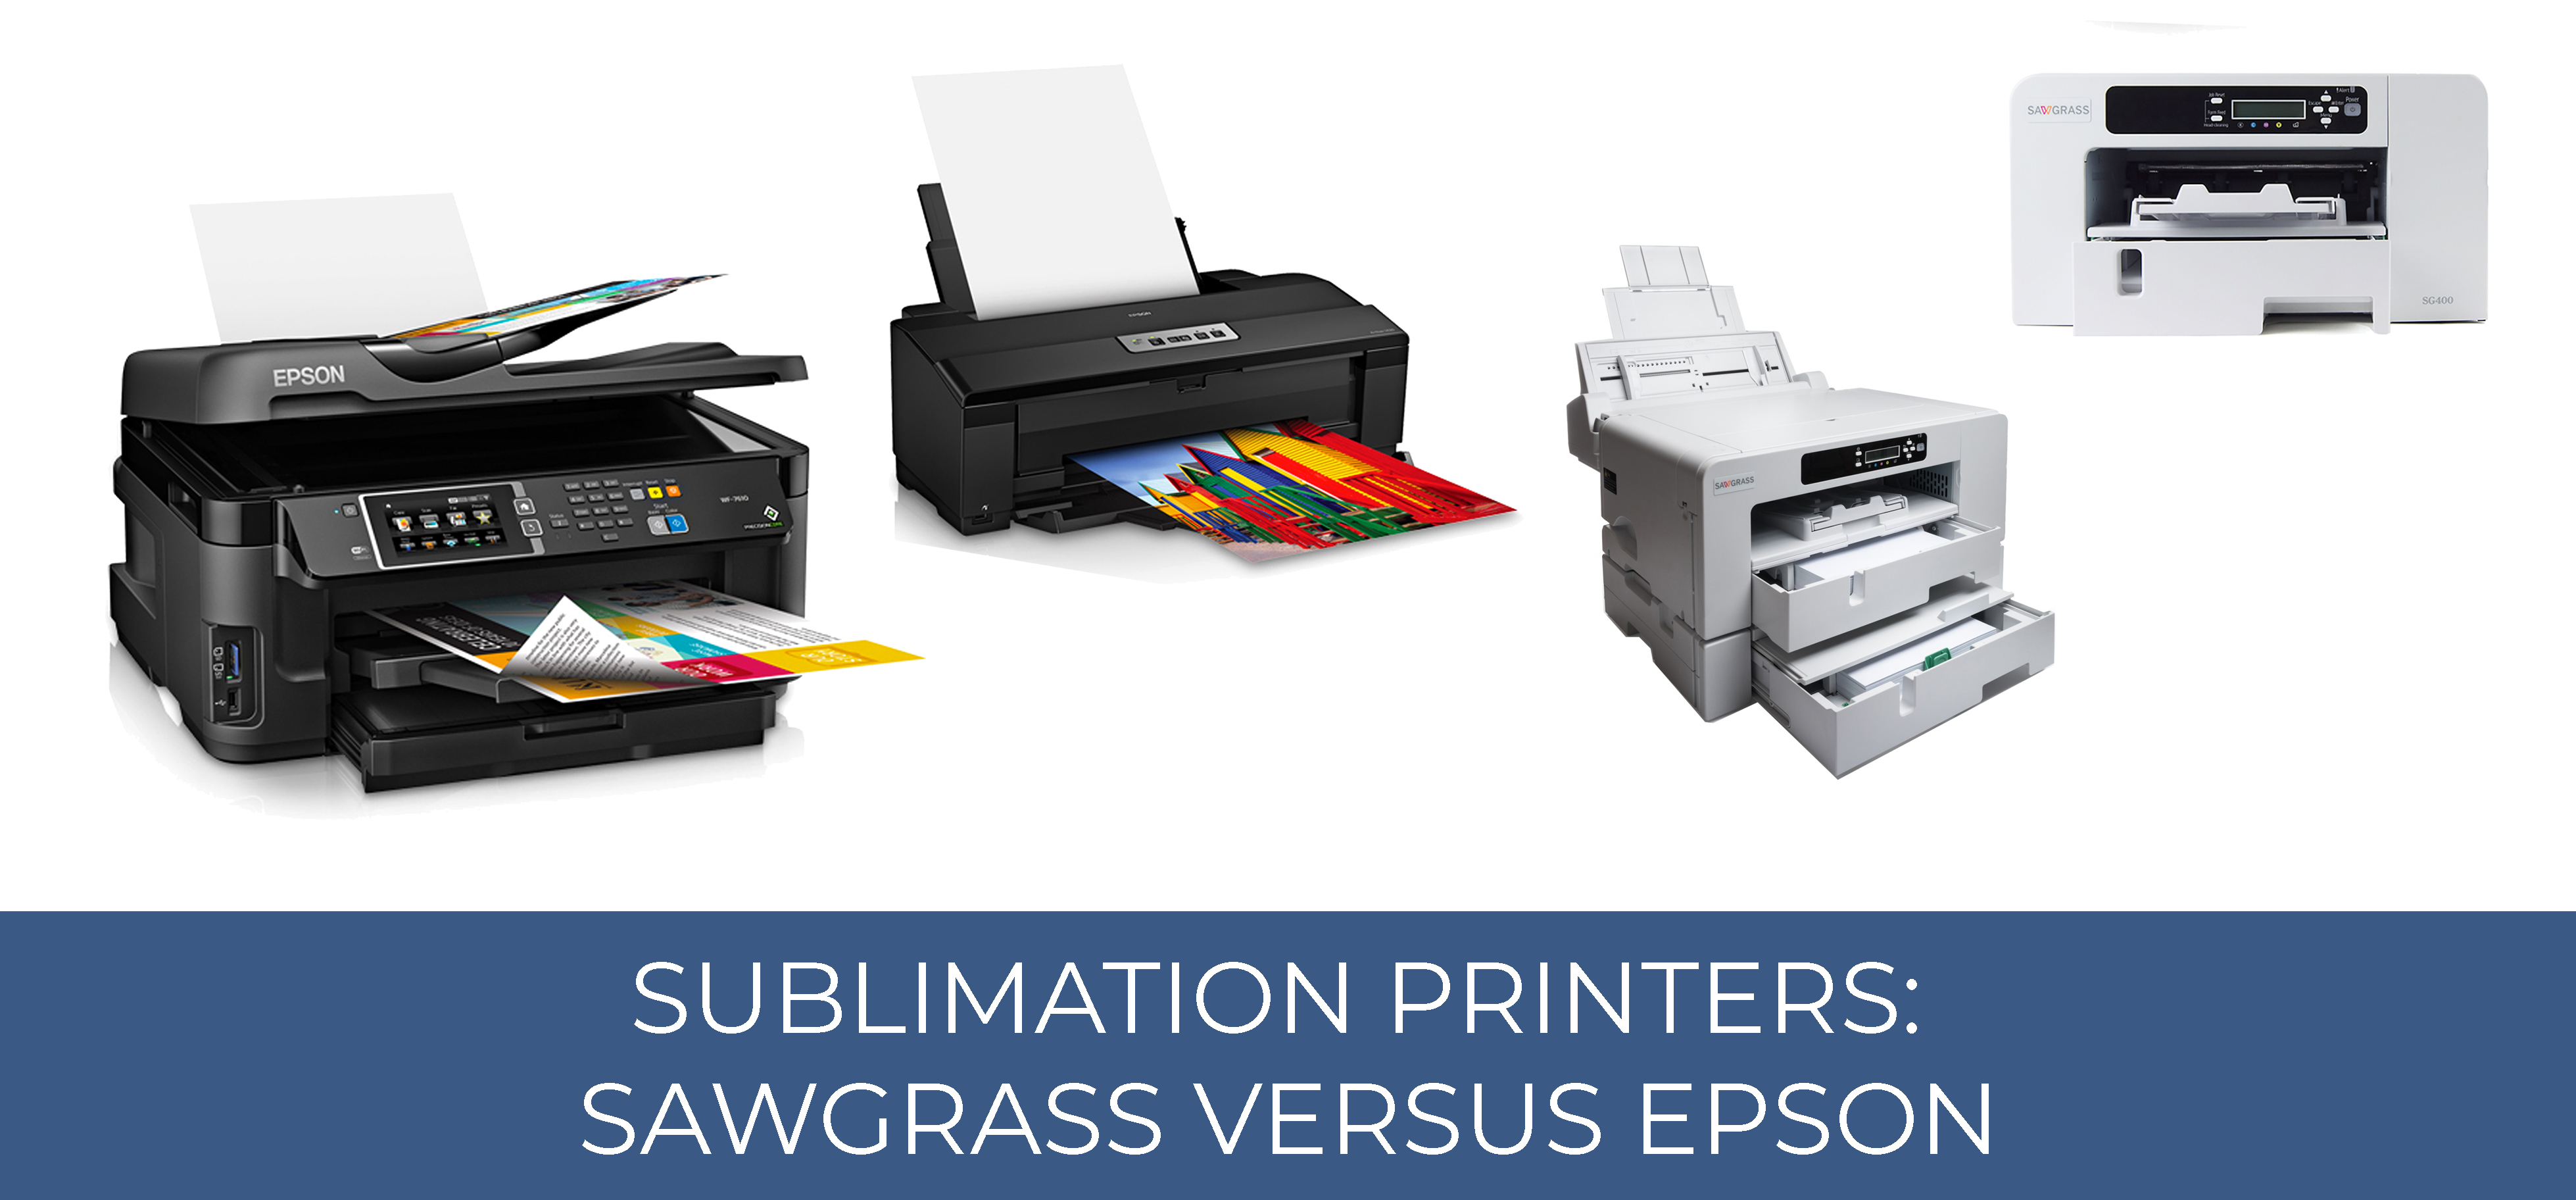 Sublimation Printers Sawgrass Versus Epson Sublimation Studies